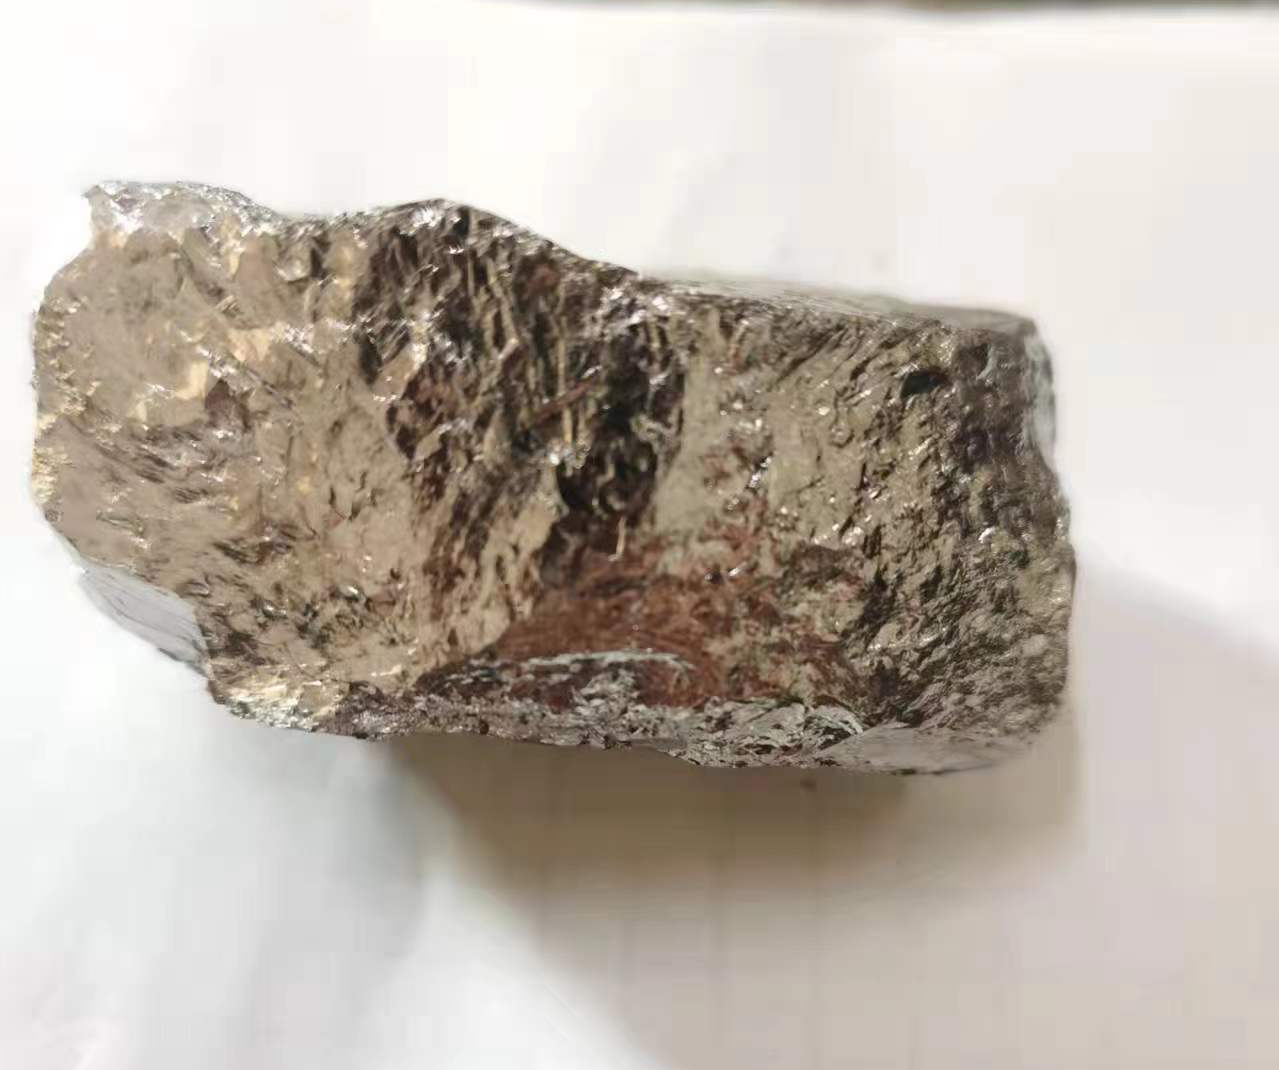 Manganese metal